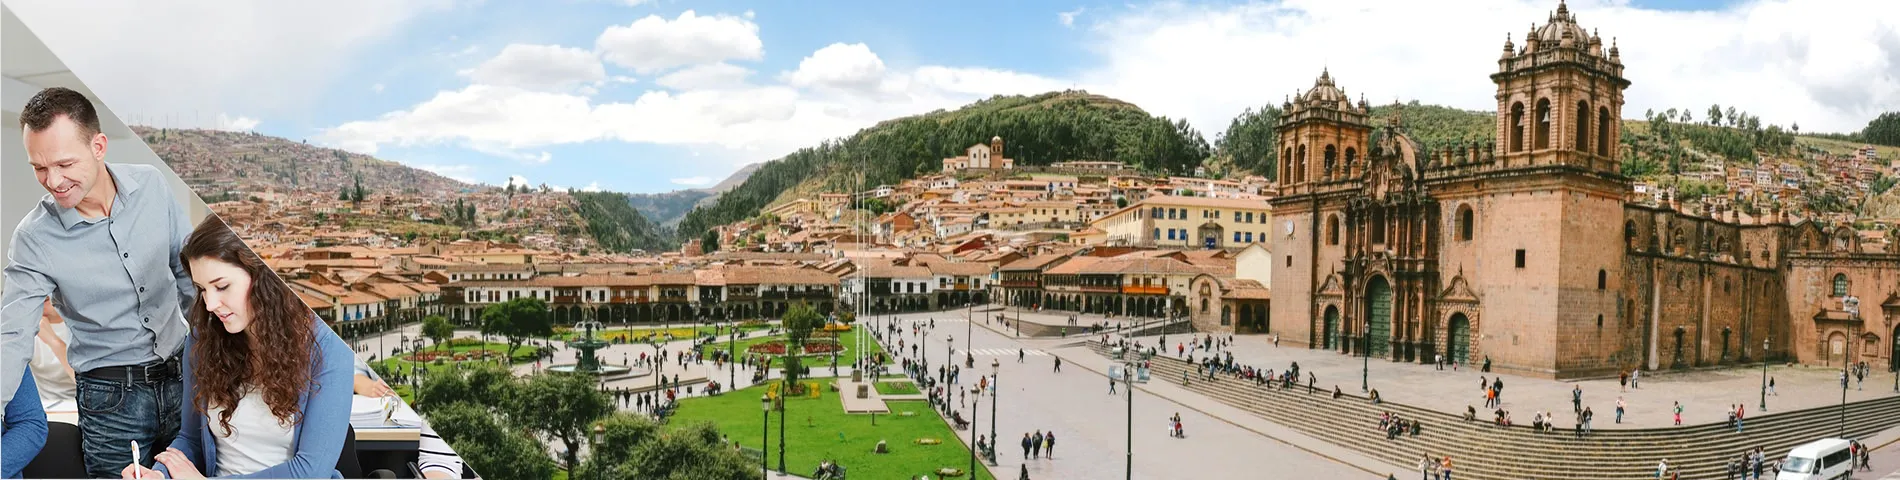 Cuzco - Combinat: Grup + Individuals